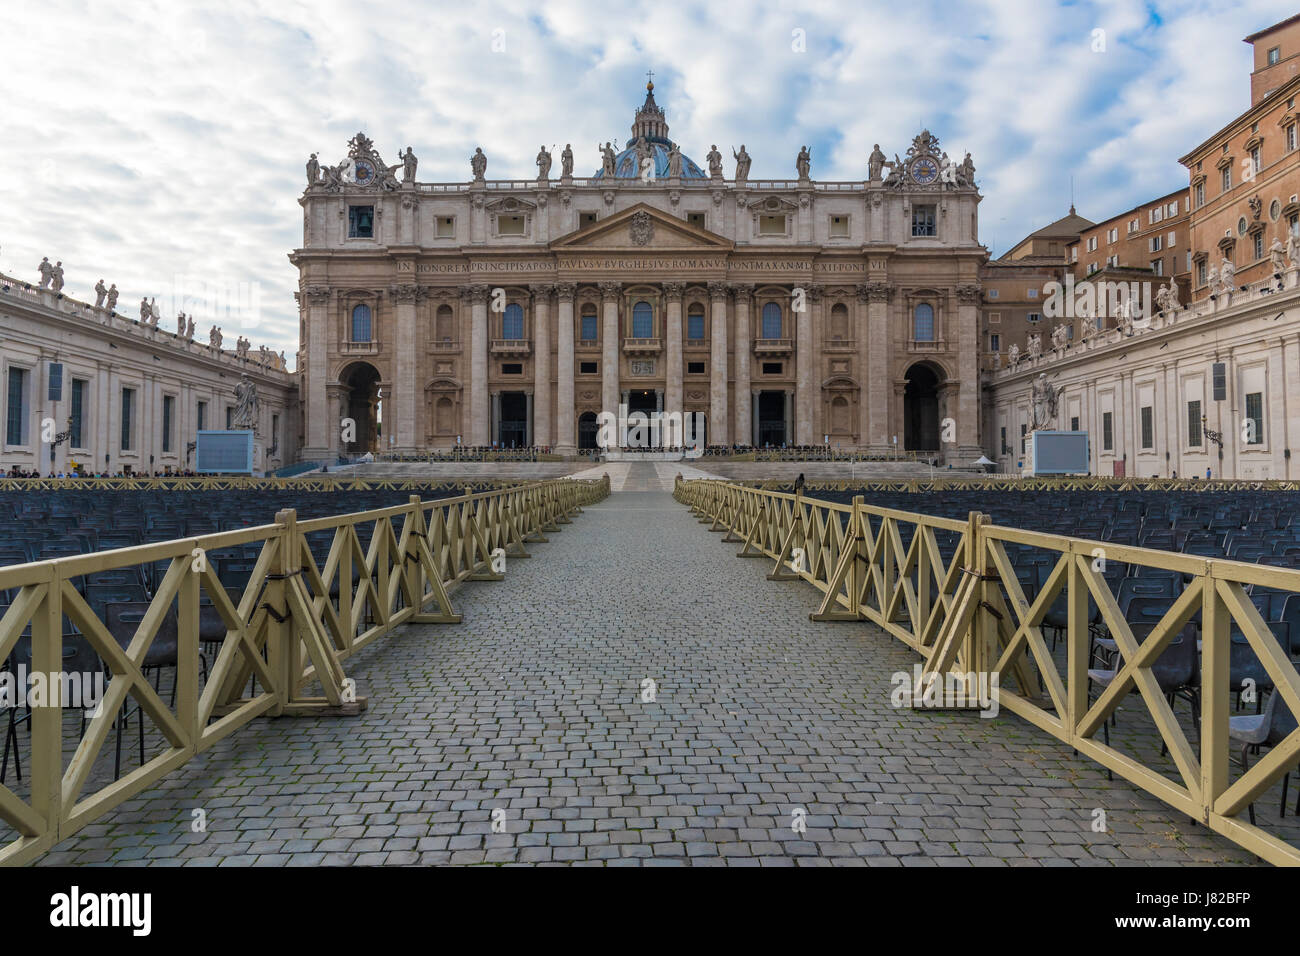 La Basilica di San Pietro e la cupola nello Stato della Città del Vaticano Foto Stock